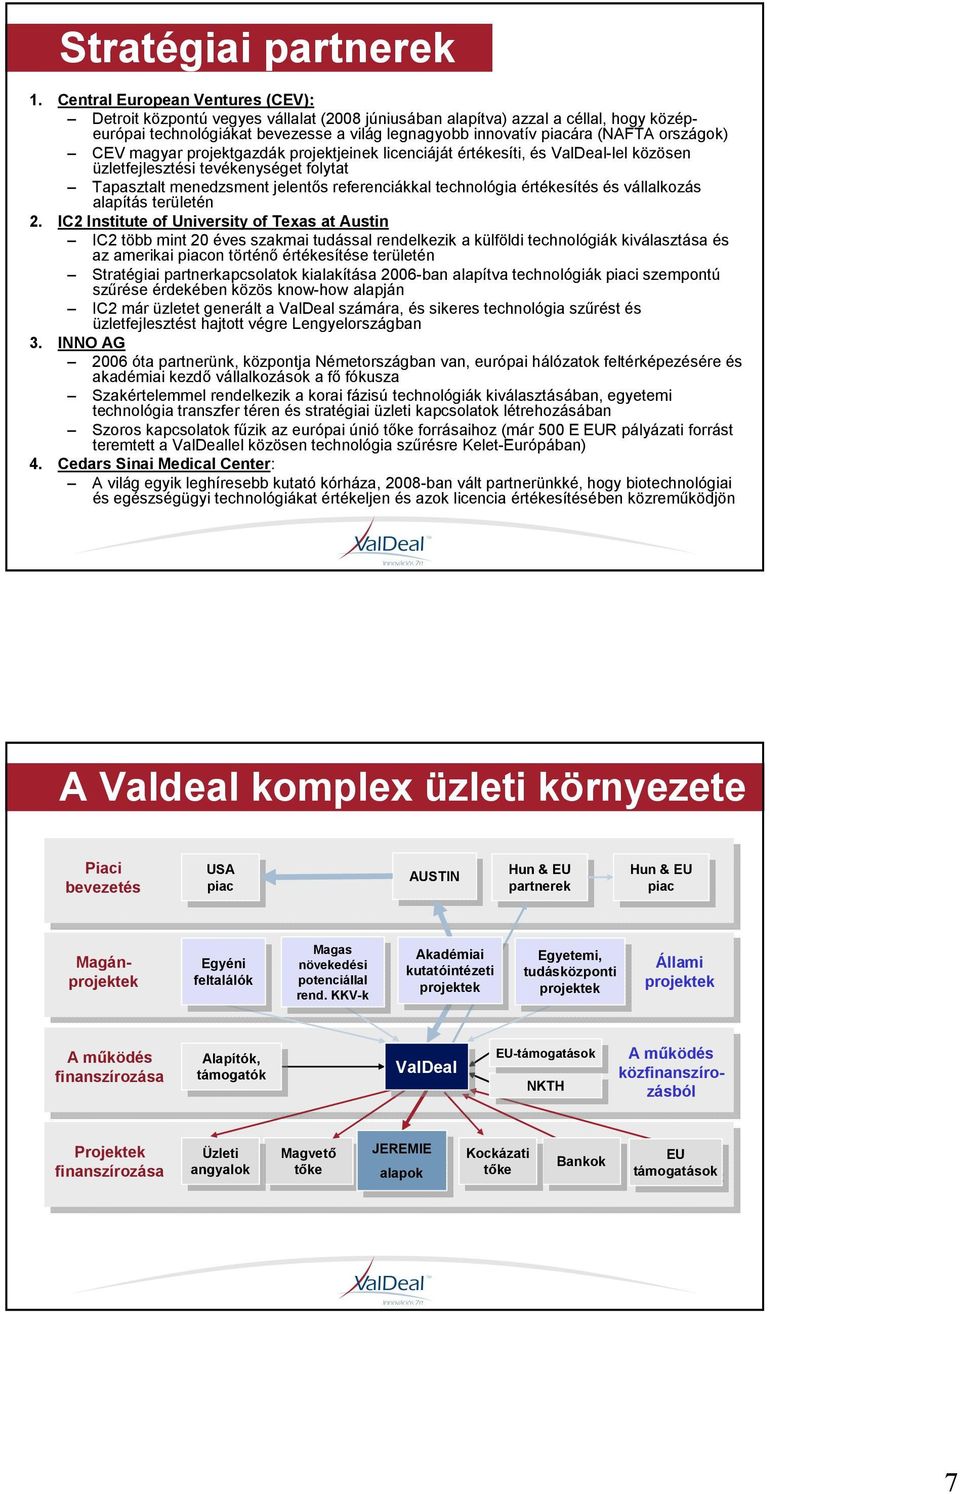 országok) CEV magyar projektgazdák projektjeinek licenciáját értékesíti, és ValDeal-lel közösen üzletfejlesztési tevékenységet folytat Tapasztalt menedzsment jelentıs referenciákkal technológia